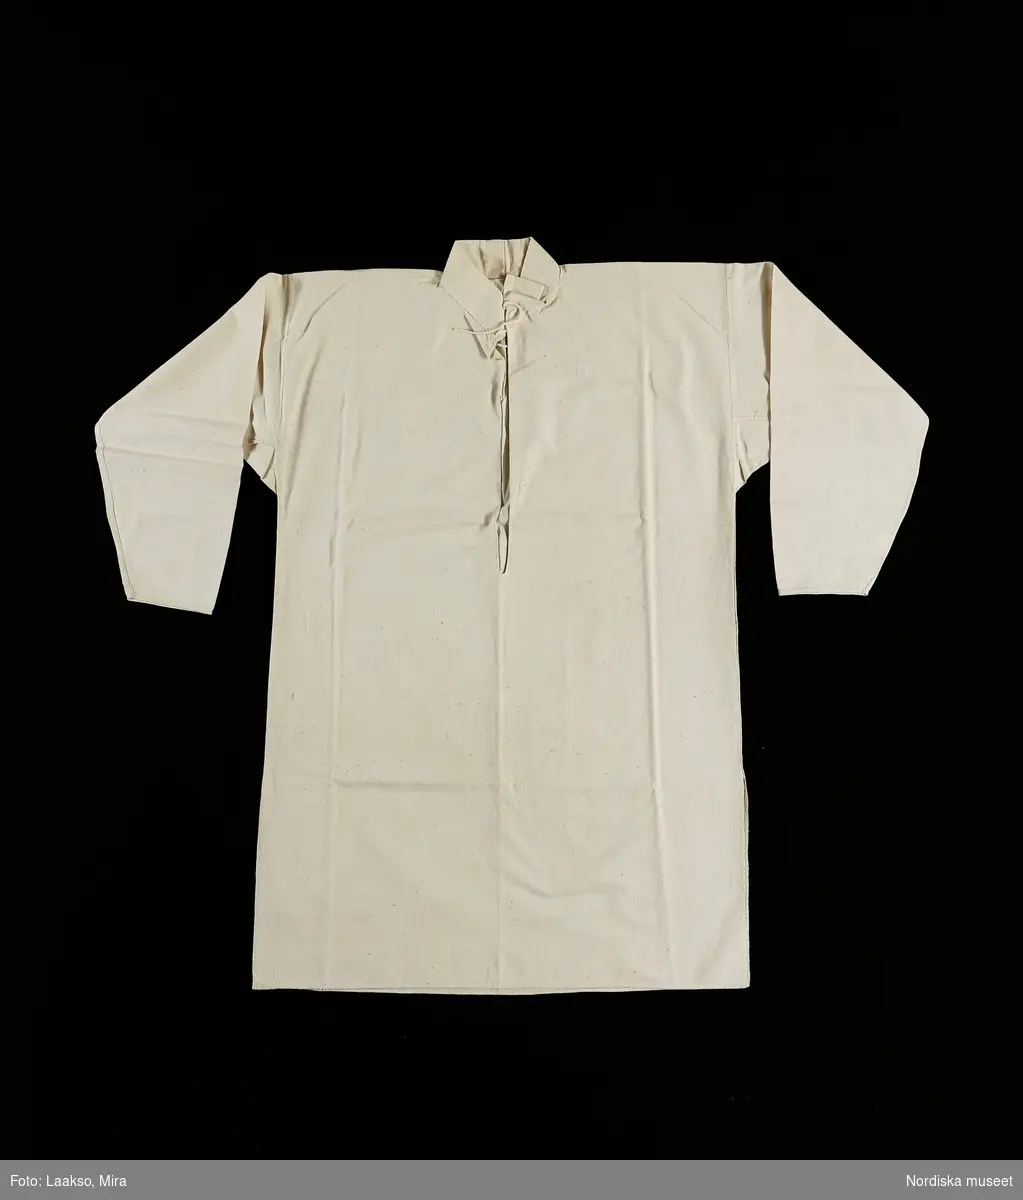 Mansskjorta  i traditionell modell, av oblekt lakanslärft i bomull, ett bålstycke med sidsömmar och sprundi sidorna. Rak ståndkrage med öppet sprund , knyts med bomullssnodd i halsen. Vidsydd rak ärm med ärmspjäll, inga ärmlinningar. Helt sydd för hand.
Skjortan hör uppenbart till de plagg som sytts upp speciellt för Nordiska museet på beställning av Artur Hazelius. Beställningarna ombesörjdes av handlaren Söderman som lät kunnigt folk i bygden sy efter gammal modell.
/Berit Eldvik 2010-09-14